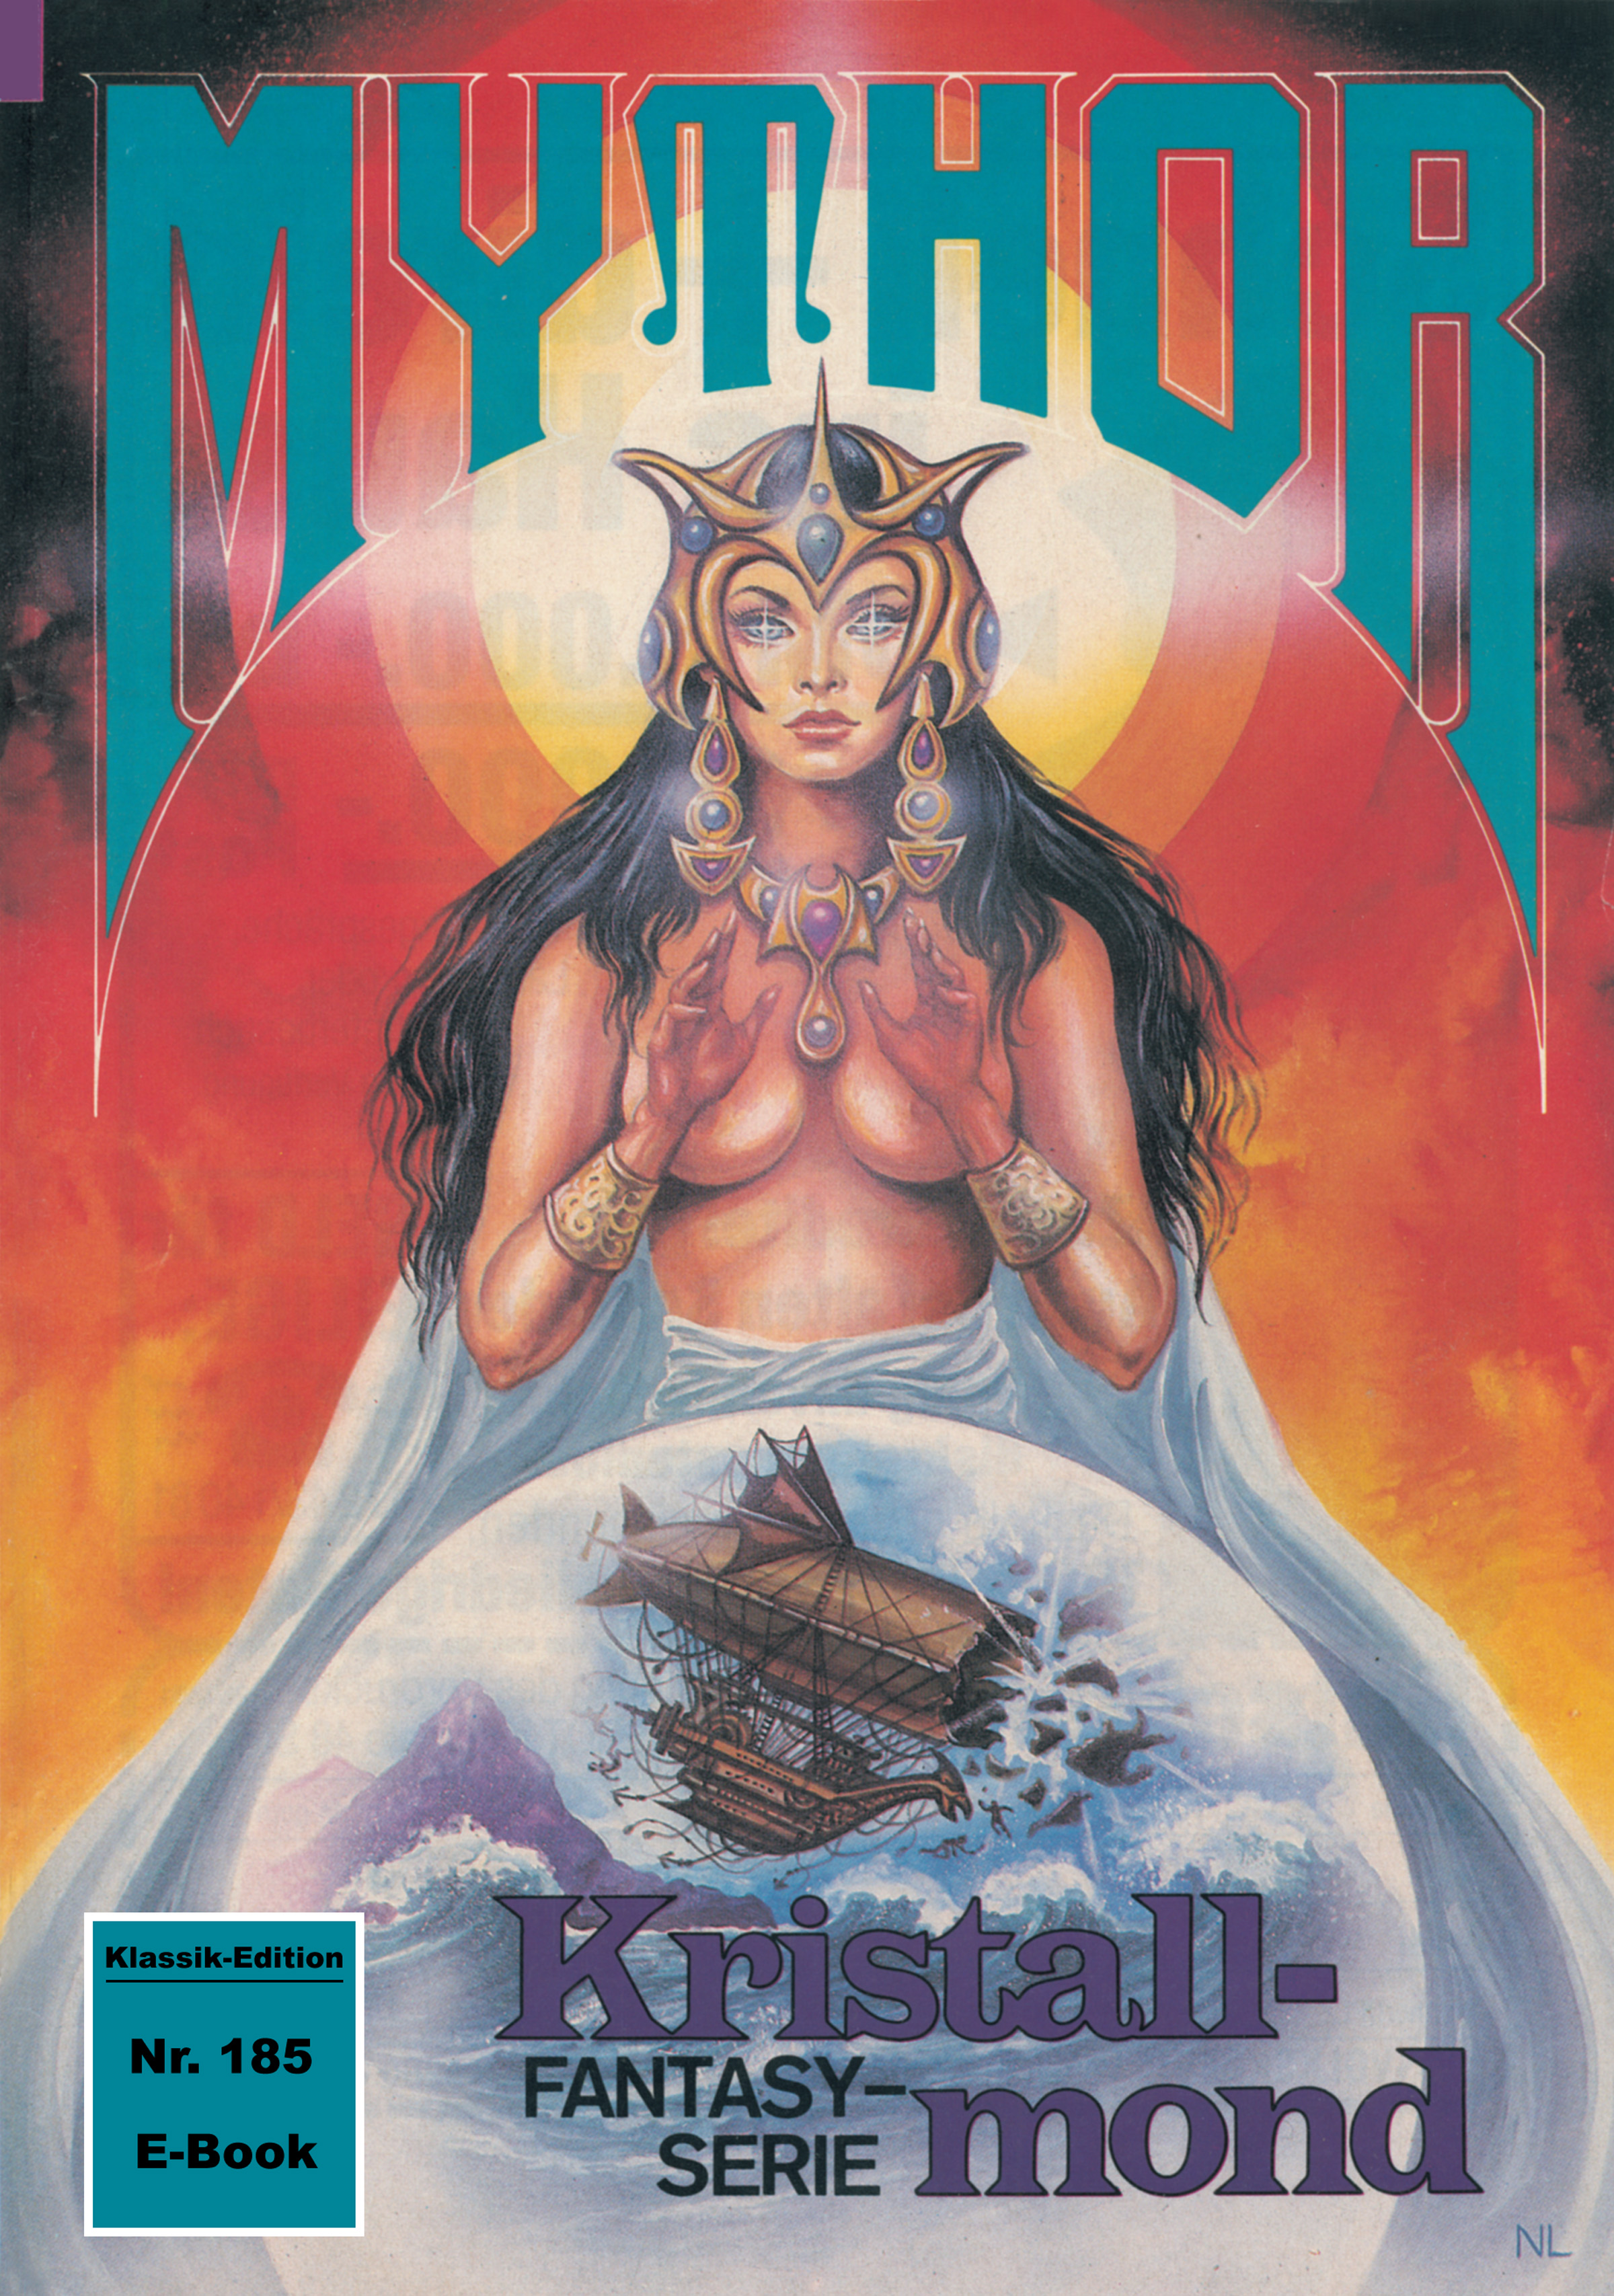 Mythor 185: Kristallmond